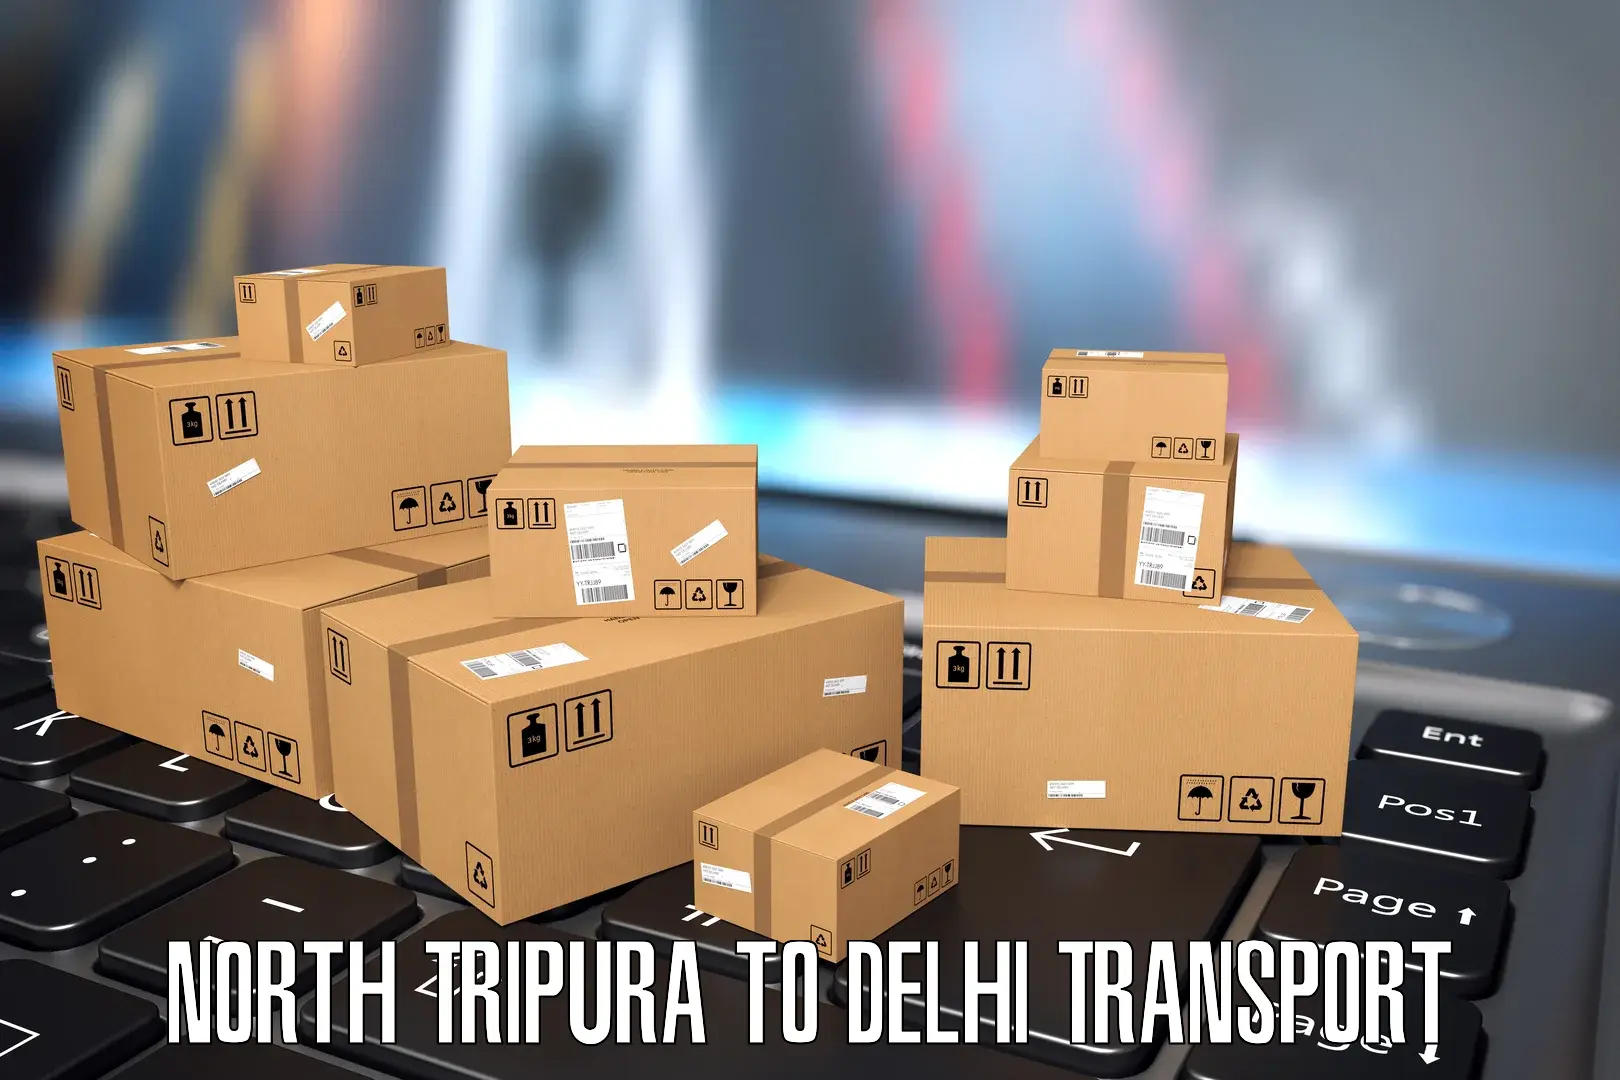 Delivery service North Tripura to University of Delhi